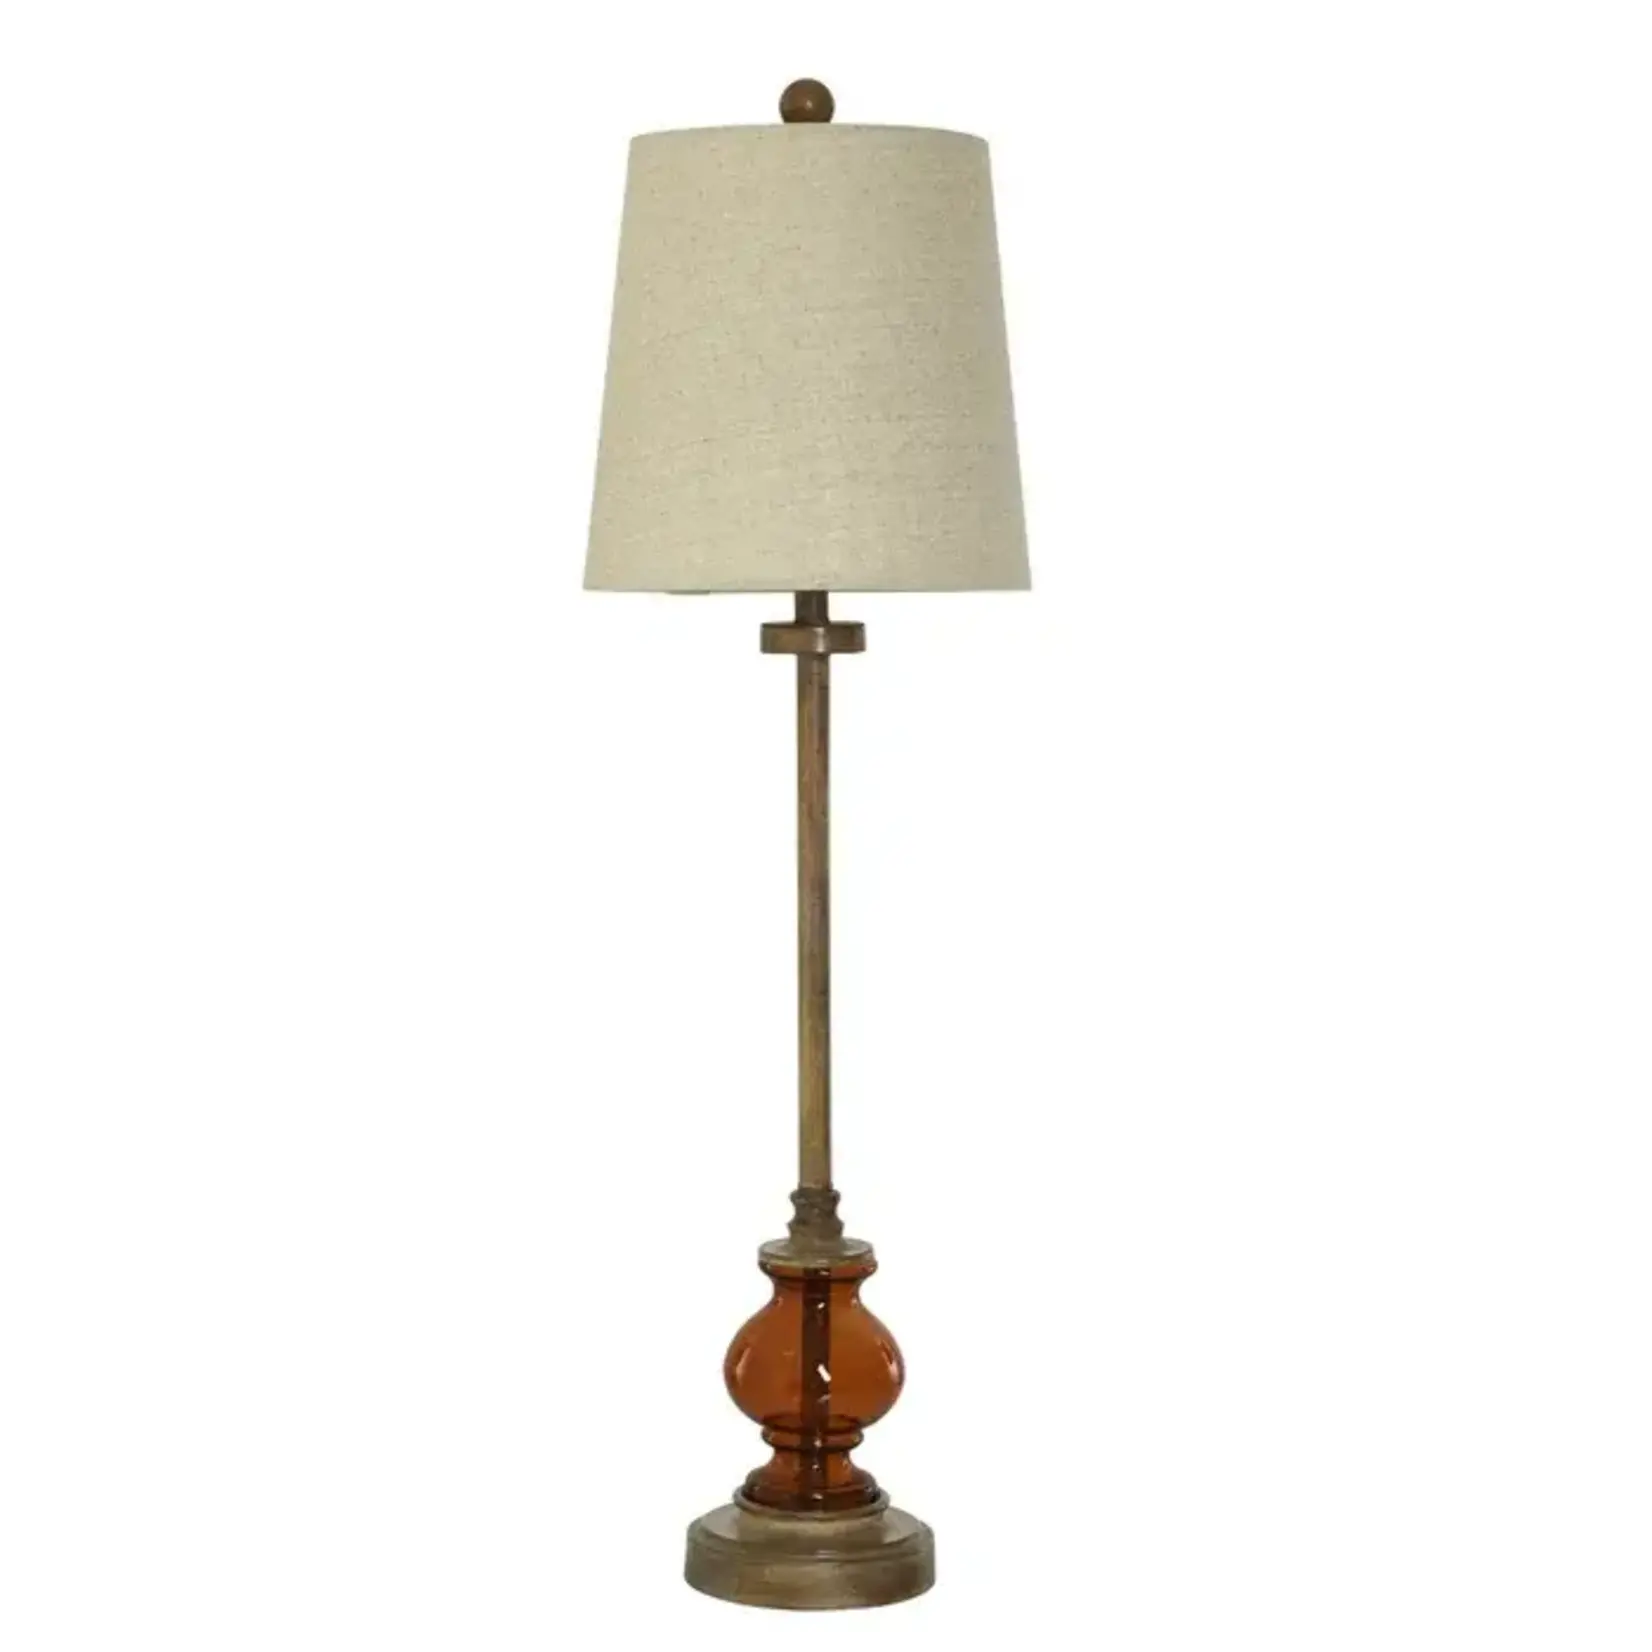 Stylecraft Lamp